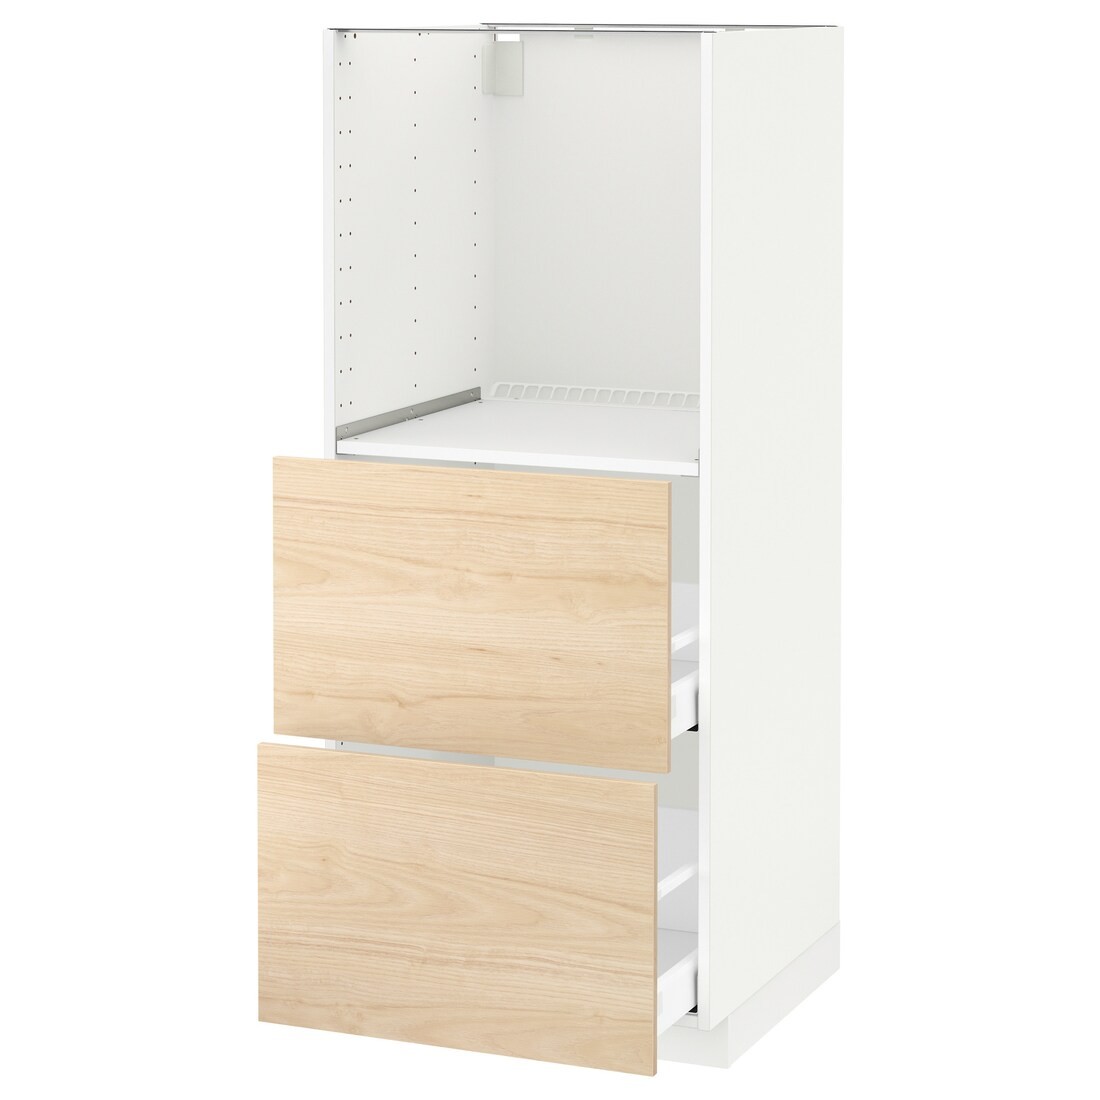 IKEA METOD МЕТОД / MAXIMERA МАКСИМЕРА Высокий шкаф с 2 ящиками для духовки, белый / Askersund узор светлый ясень, 60x60x140 см 19215996 192.159.96